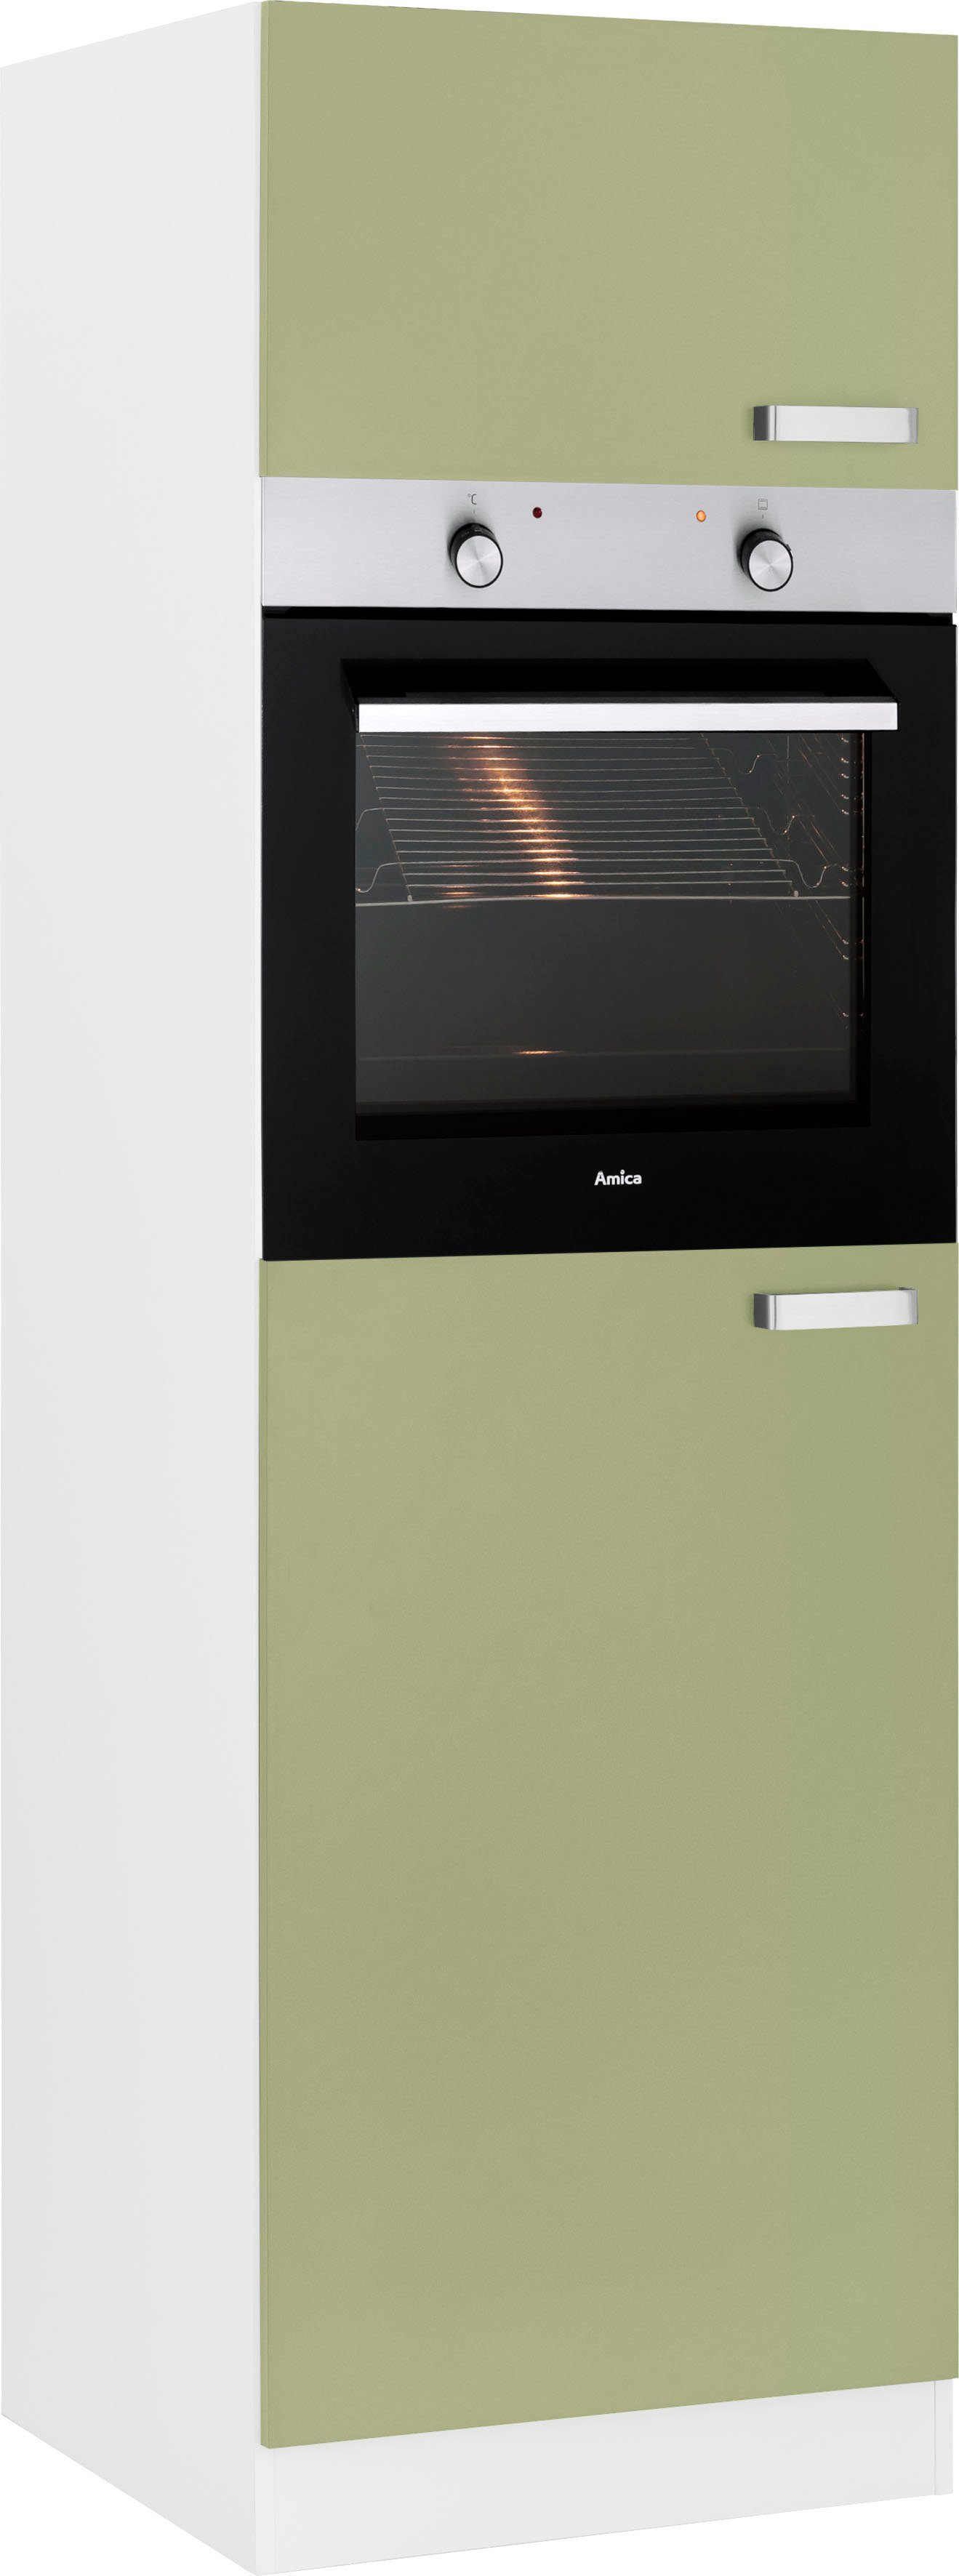 wiho Küchen Oven/koelkastombouw Husum 60 cm breed